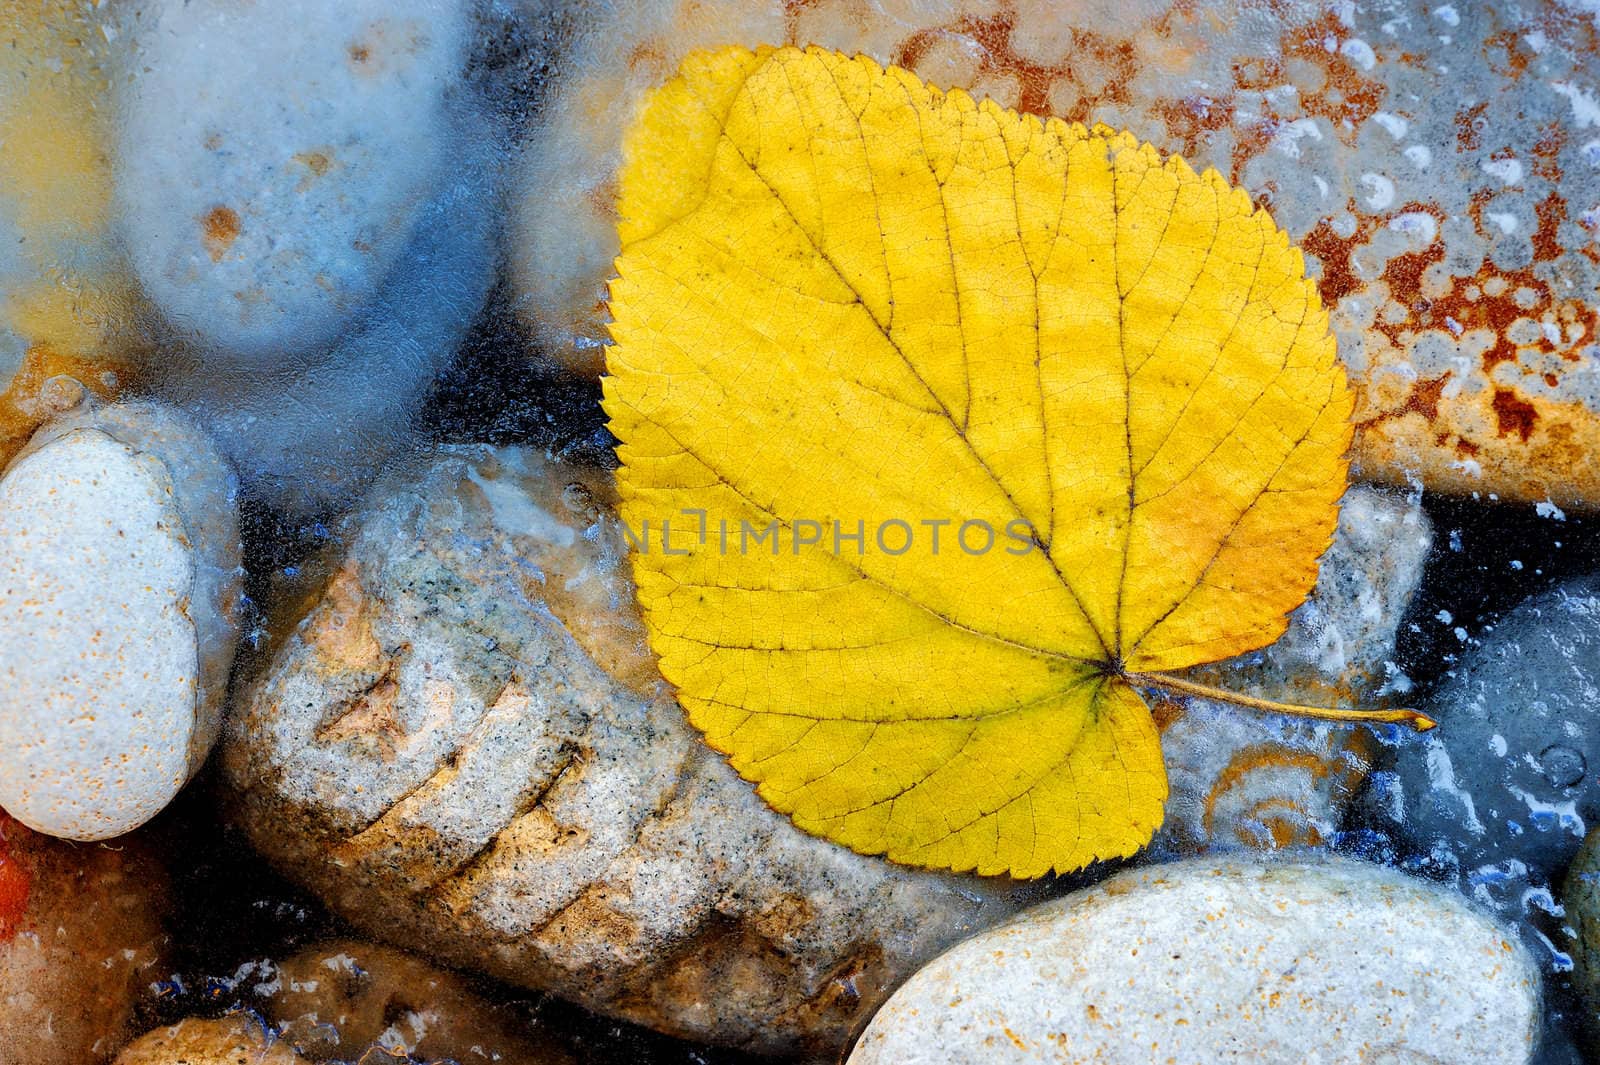 Yellow leaf by styf22